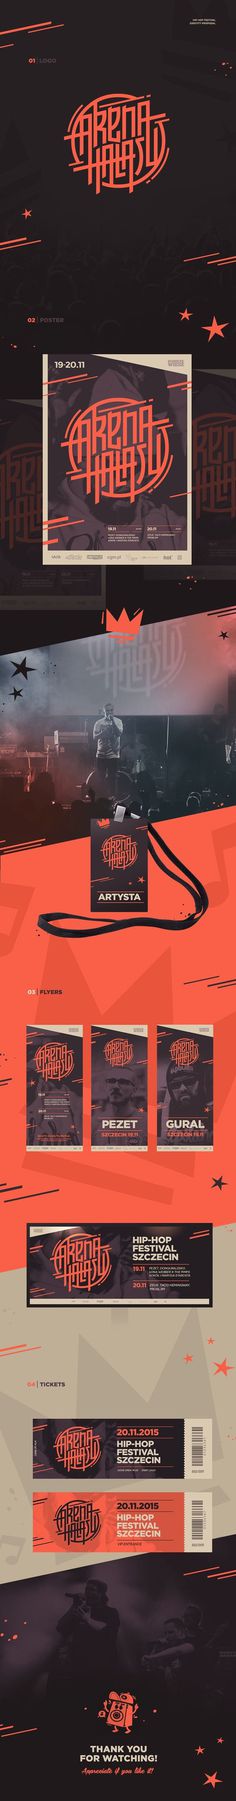 Arena Hałasu hip-hop festival Branding by Piotr Kubicki